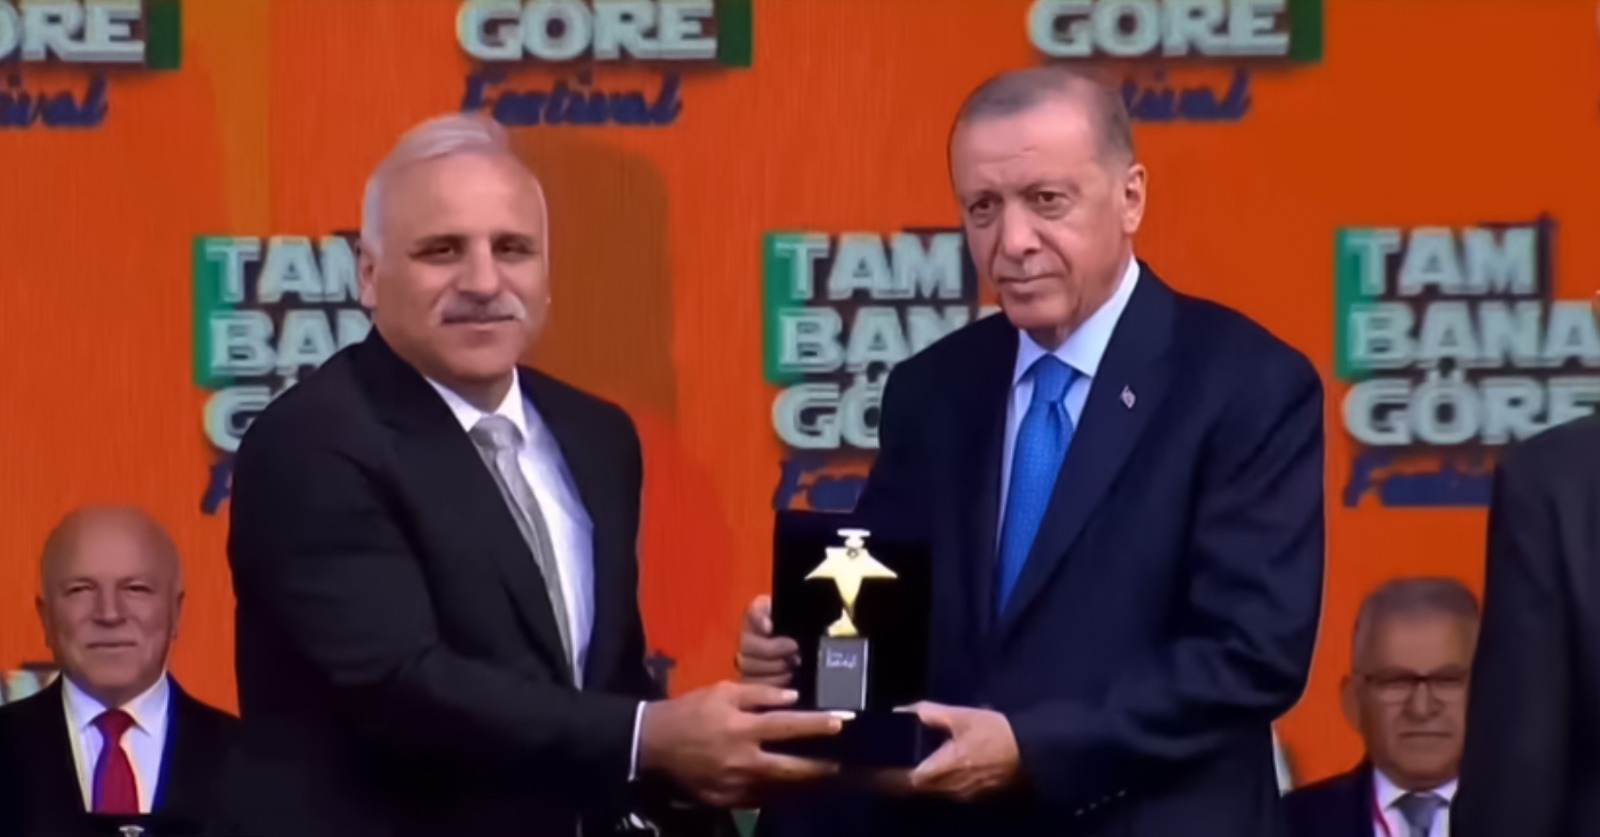 Trabzon Büyükşehir Belediyesi, Cumhurbaşkanı Recep Tayyip Erdoğan’ın da katılımıyla Ankara’da gerçekleştirilen ‘Tam Bana Göre Festivali’ne damga vurdu. Açtığı stantla her kesimden büyük ilgi gören Büyükşehir Belediyesi, Sporcu Performans ve Yetenek Merkezi Projesiyle de ‘Gençliğe Hizmet Ödülü’ne layık görüldü. Büyükşehir Belediye Başkanı Murat Zorluoğlu, ödülü Cumhurbaşkanı Recep Tayyip Erdoğan’ın elinden aldı.